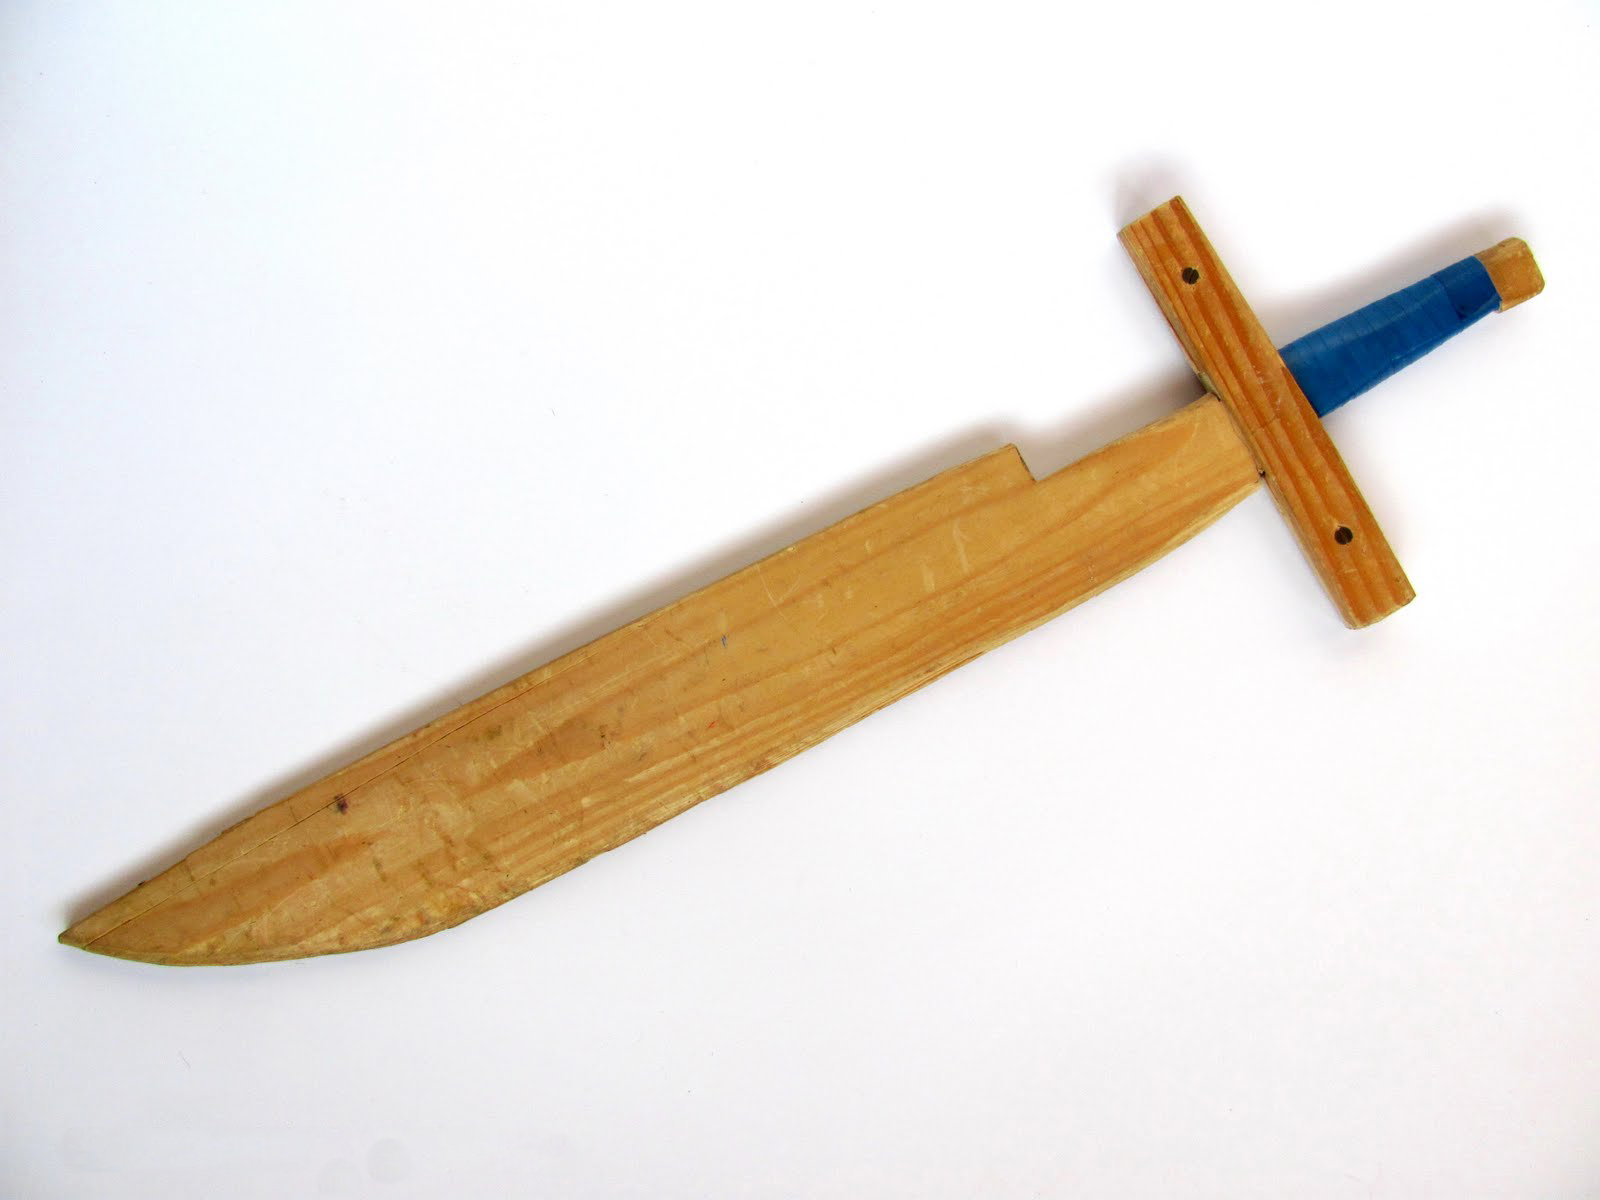 Как сделать меч из бумаги шарика дерева картона - деревянный световой алмазный лазерный бумажный меч